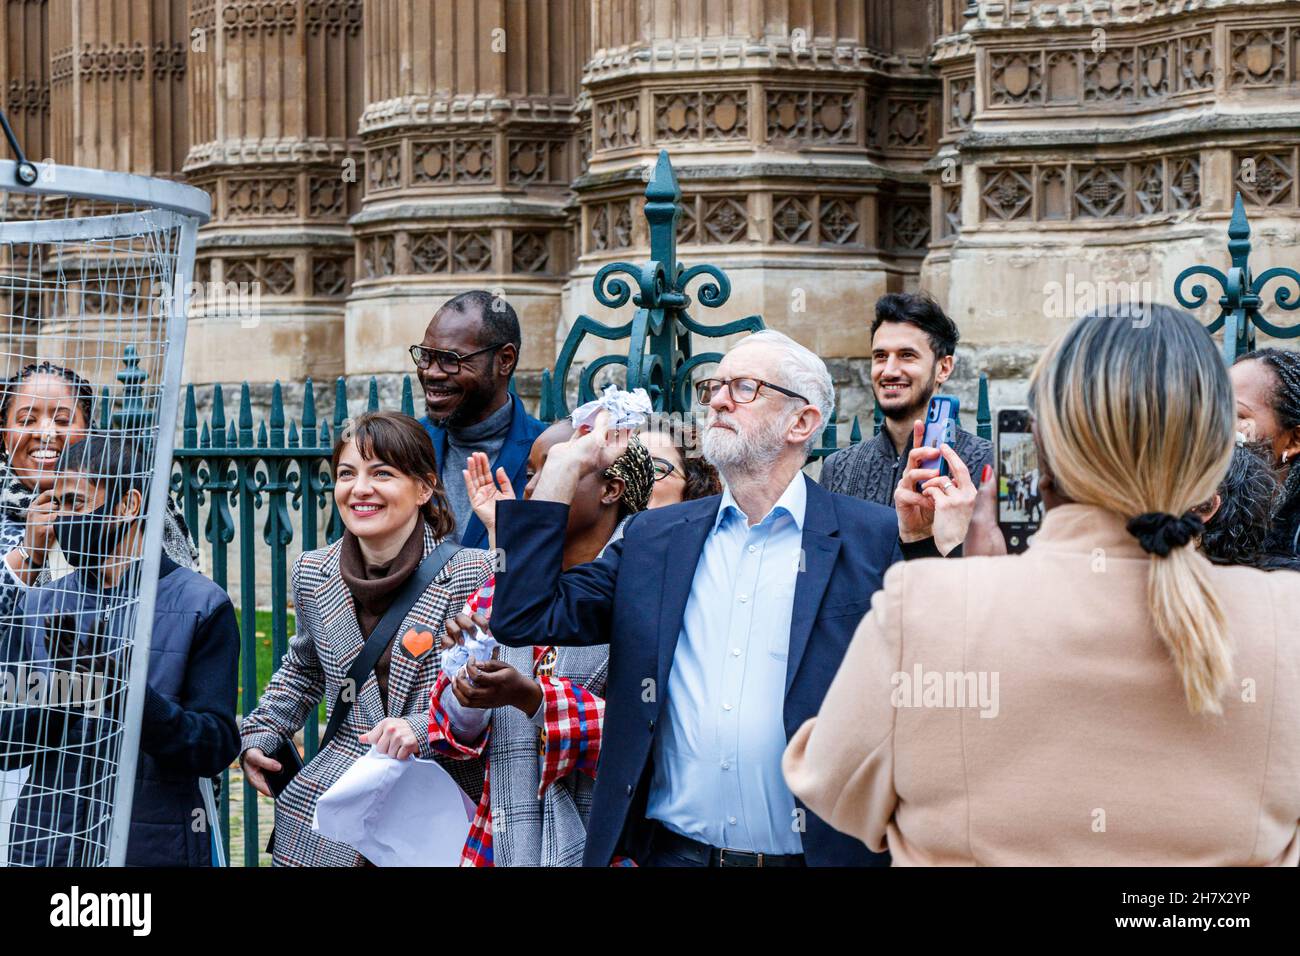 Der Abgeordnete Jeremy Corbyn schließt sich bei einer Veranstaltung vor dem Parlament, Westminster, London, Großbritannien, den Aktivisten für die Freiheit von Folter an Stockfoto